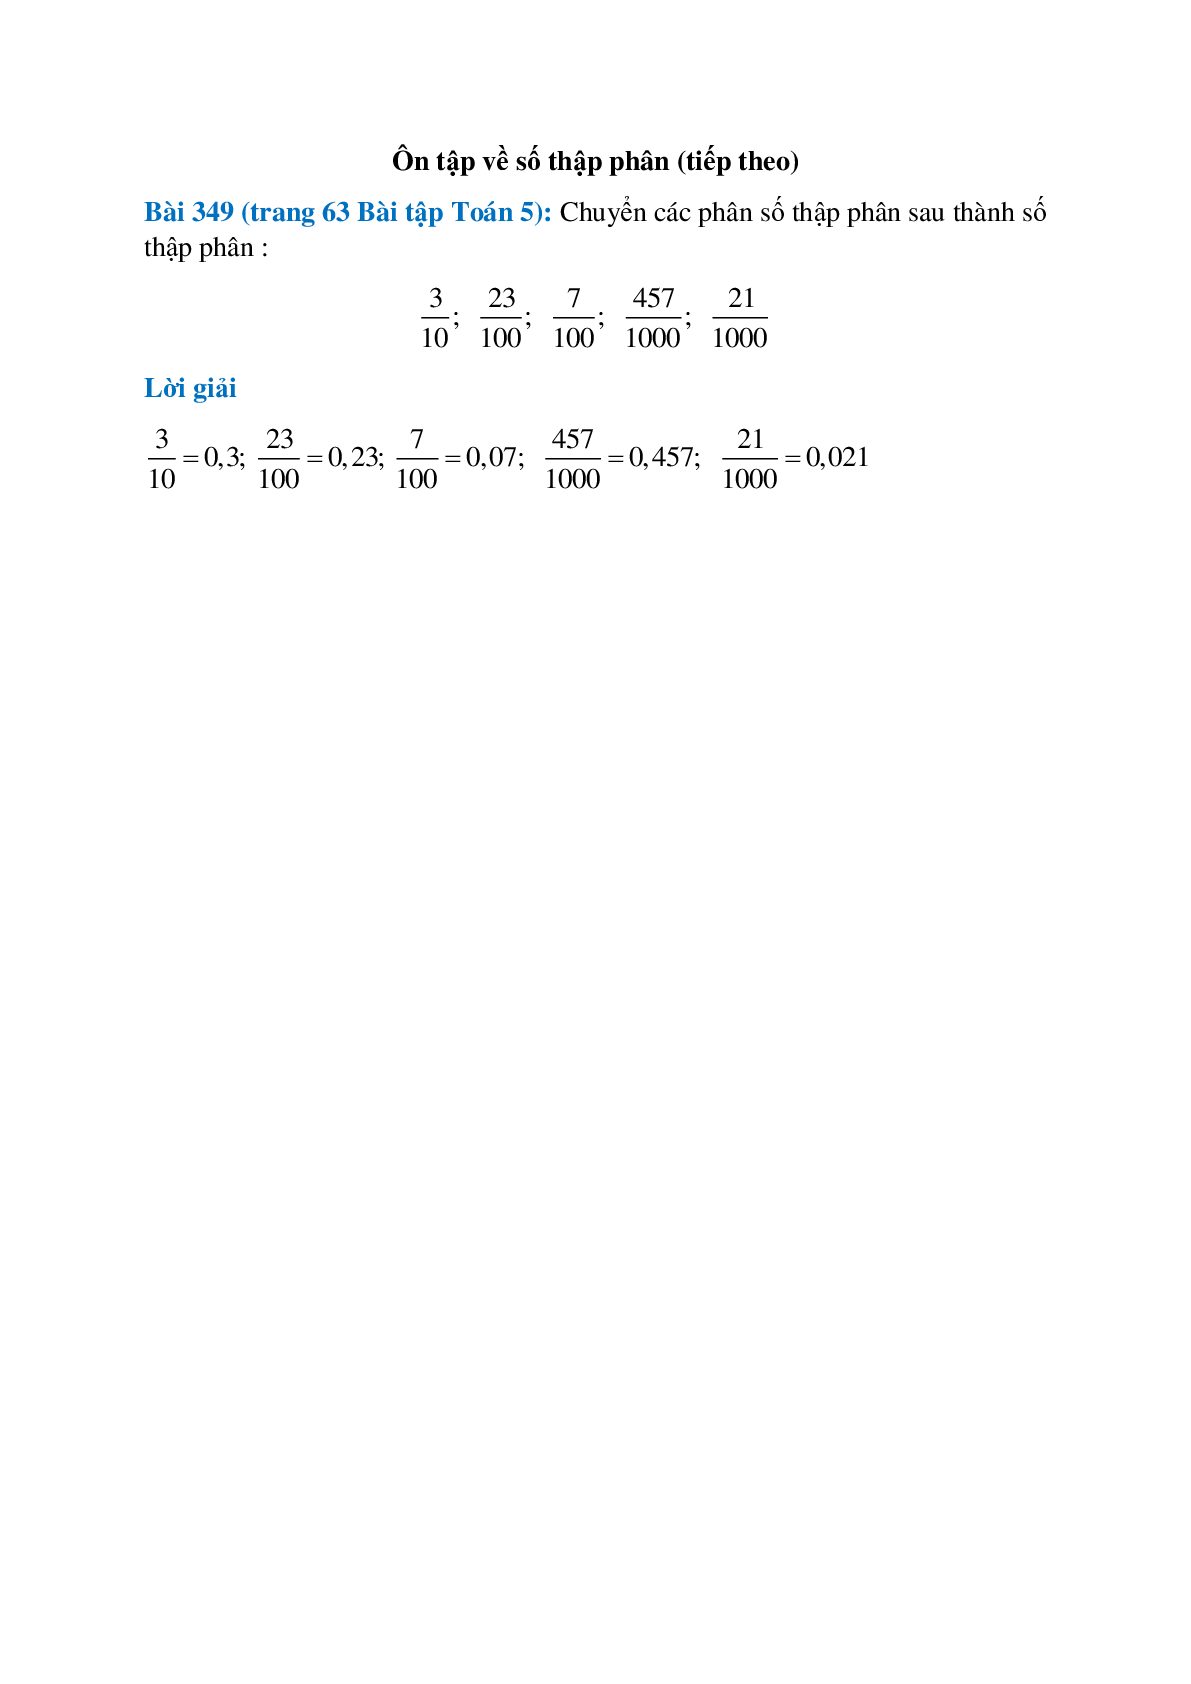 Chuyển các phân số thập phân sau thành số thập phân: 3/10; 23/100; 7/100 (trang 1)